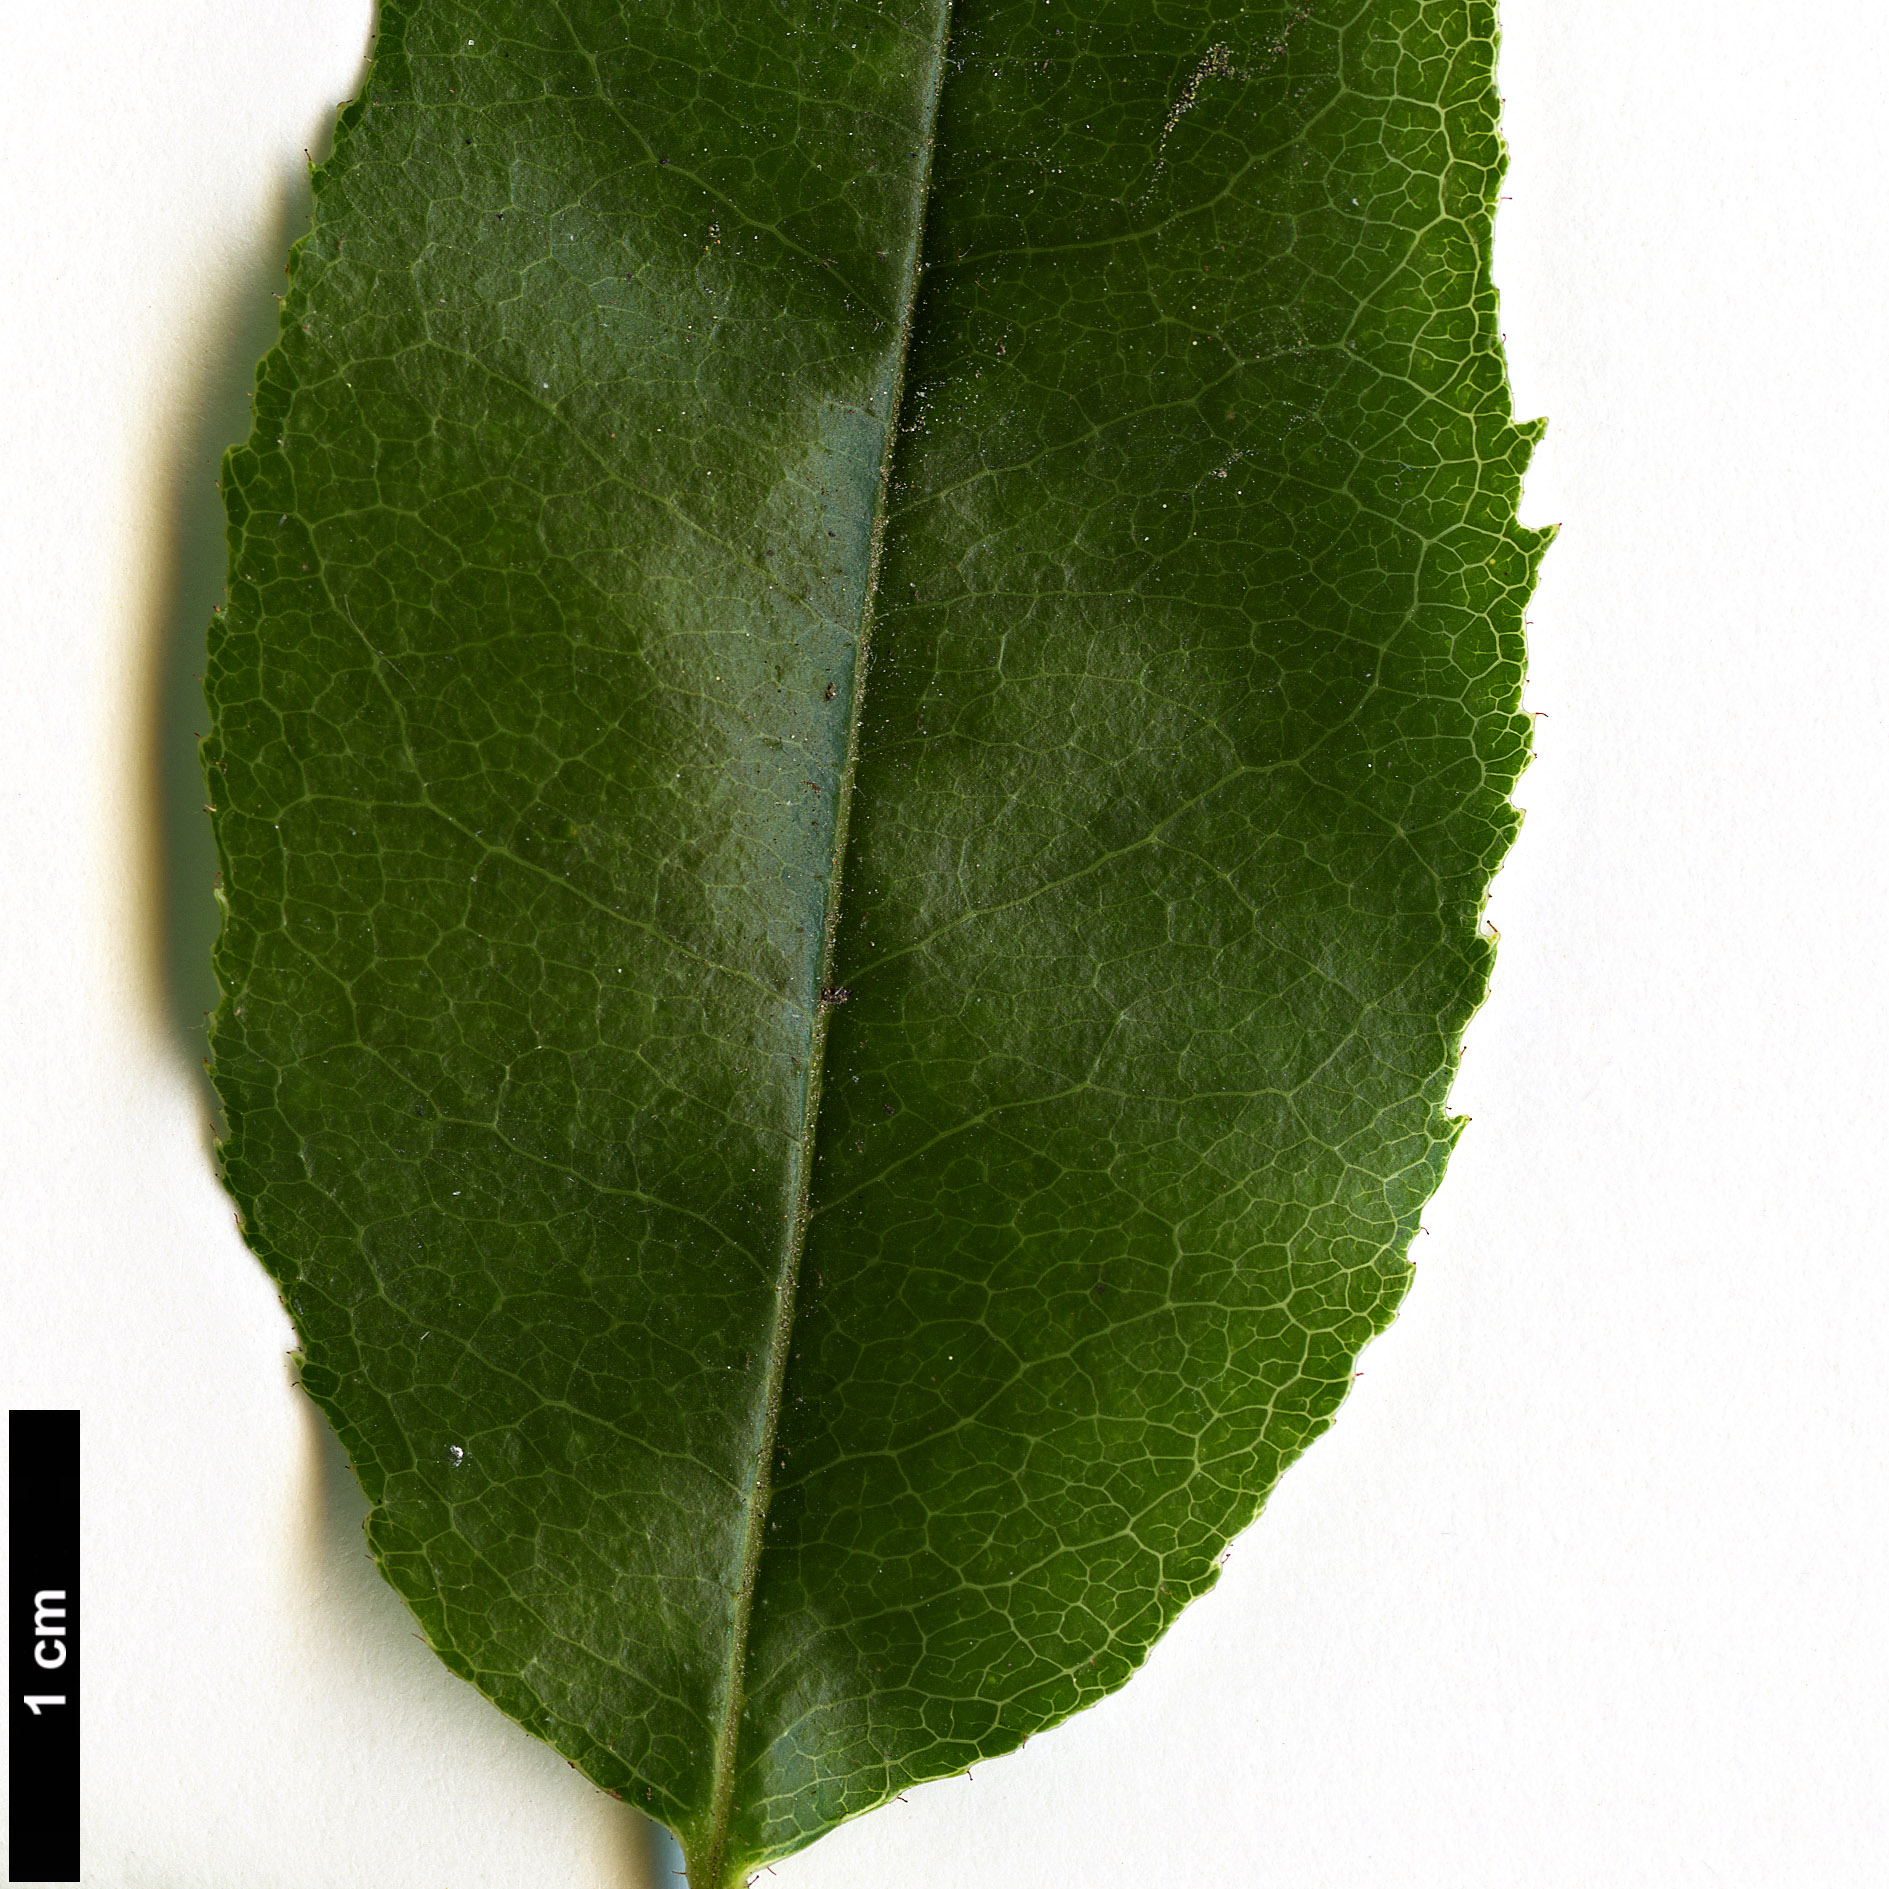 High resolution image: Family: Ericaceae - Genus: Agarista - Taxon: populifolia